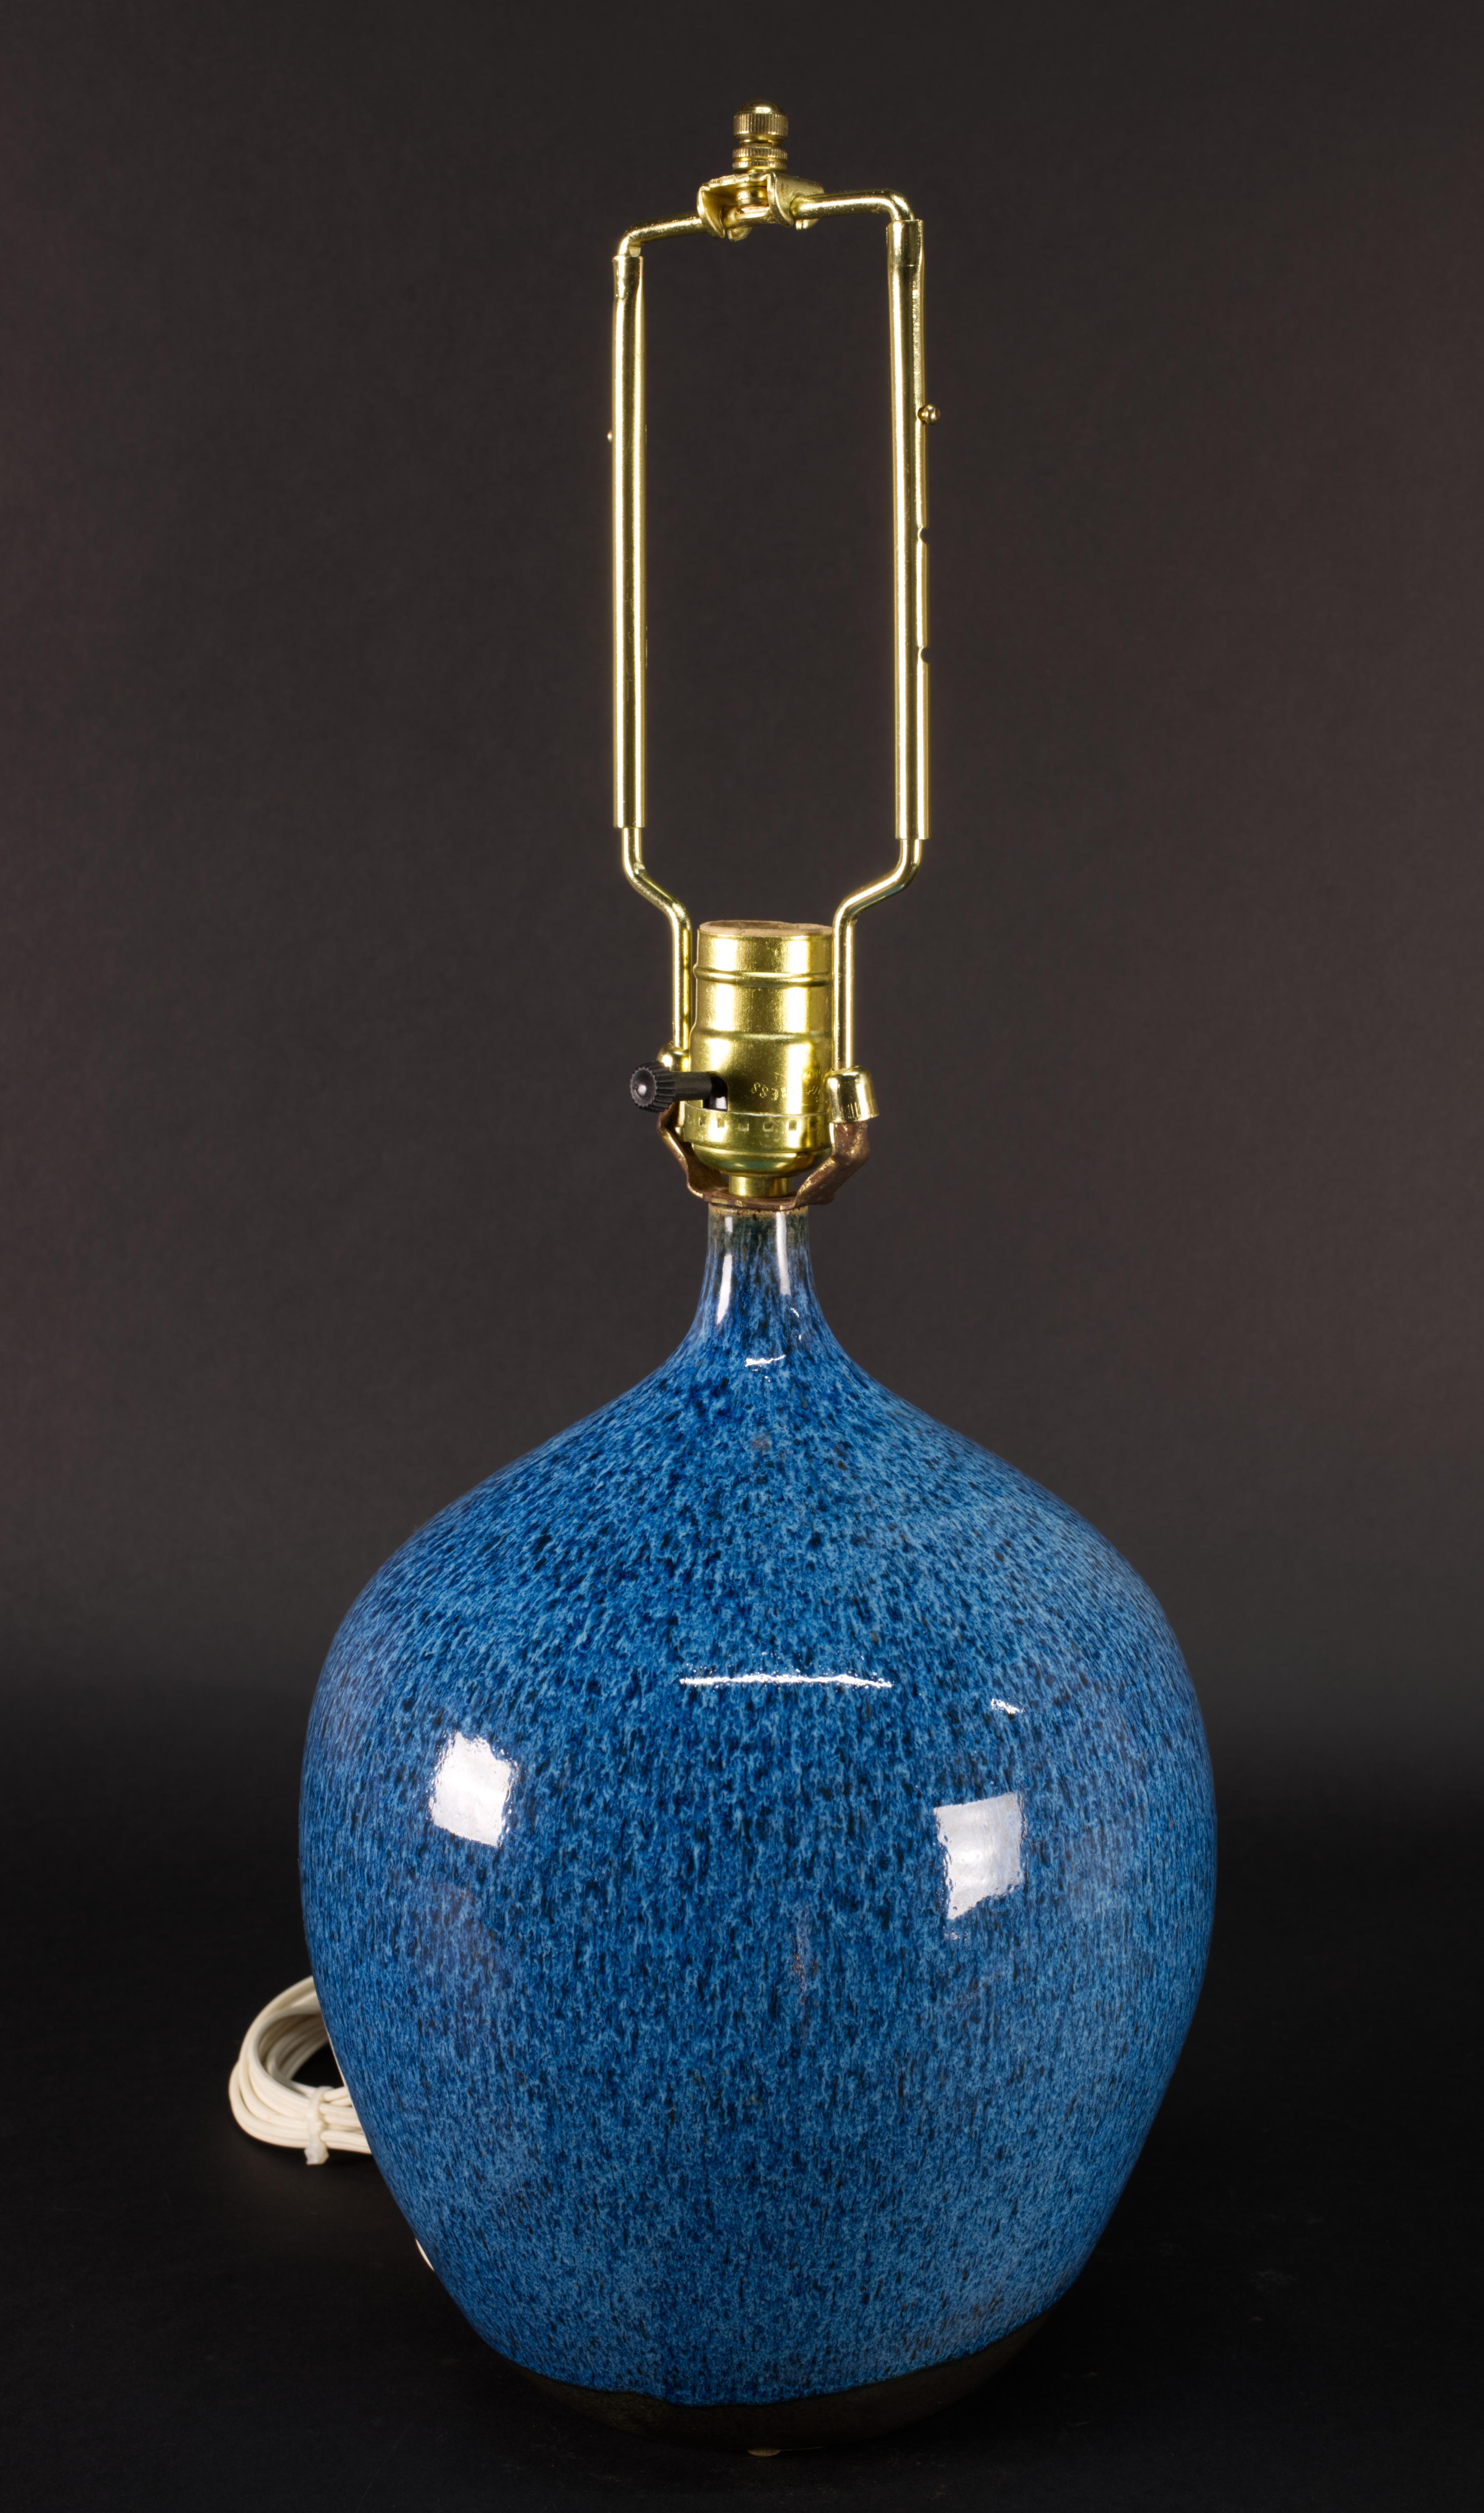 
Die Vintage Studio Art Pottery Keramik Tisch- oder Akzentlampe ist mit glänzender gesprenkelter Glasur in Blautönen verziert. Der Korpus der Lampe wurde von Hand auf einem Rad gedreht. Die markante, auffällige Glasur erzeugt ein organisches, frei